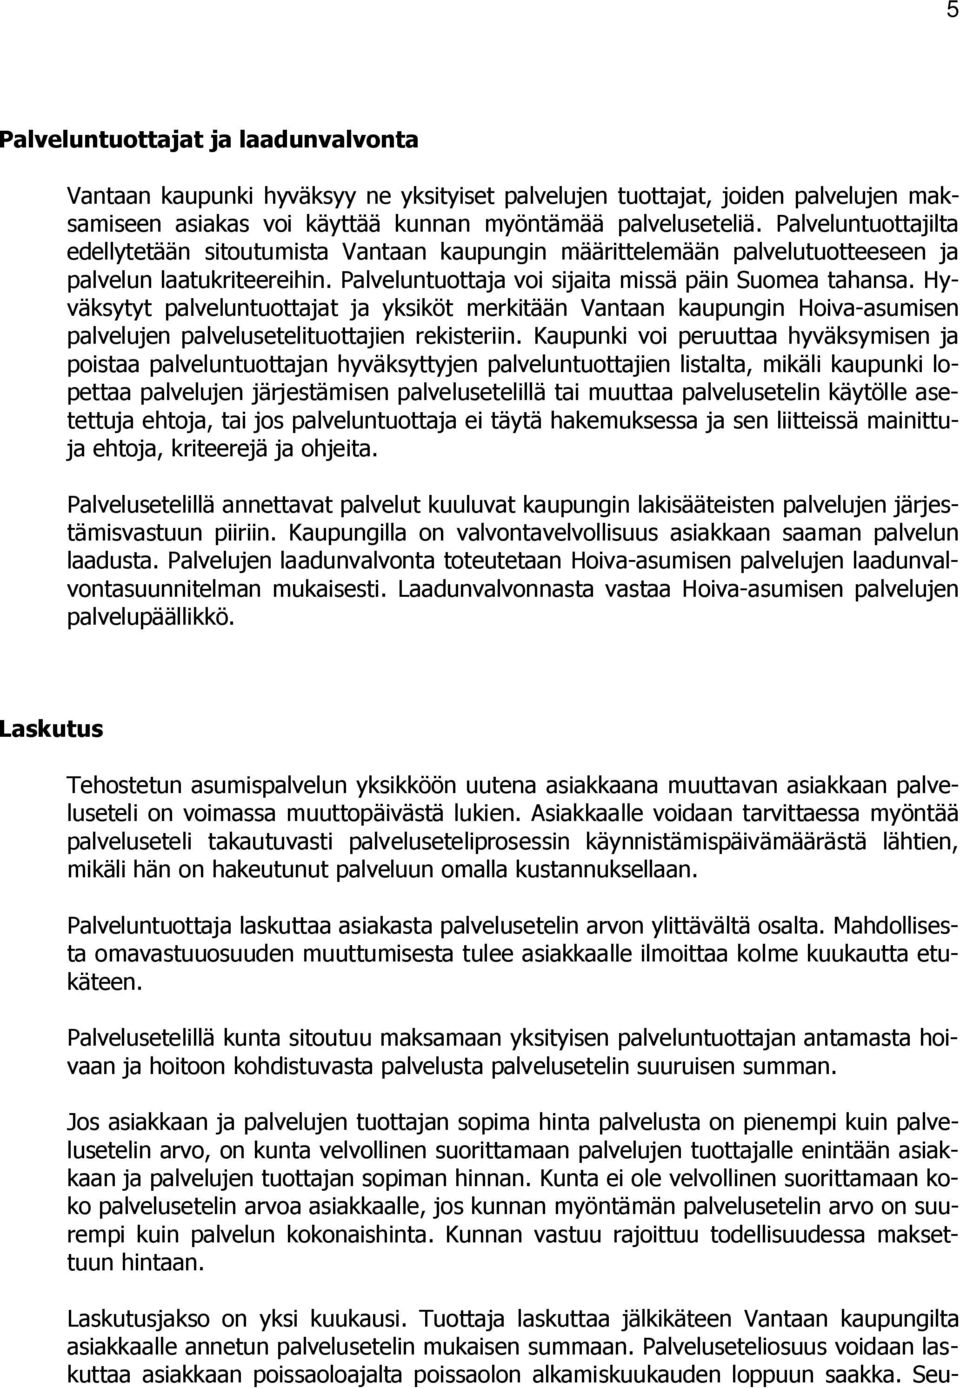 Hyväksytyt palveluntuottajat ja yksiköt merkitään Vantaan kaupungin Hoiva-asumisen palvelujen palvelusetelituottajien rekisteriin.